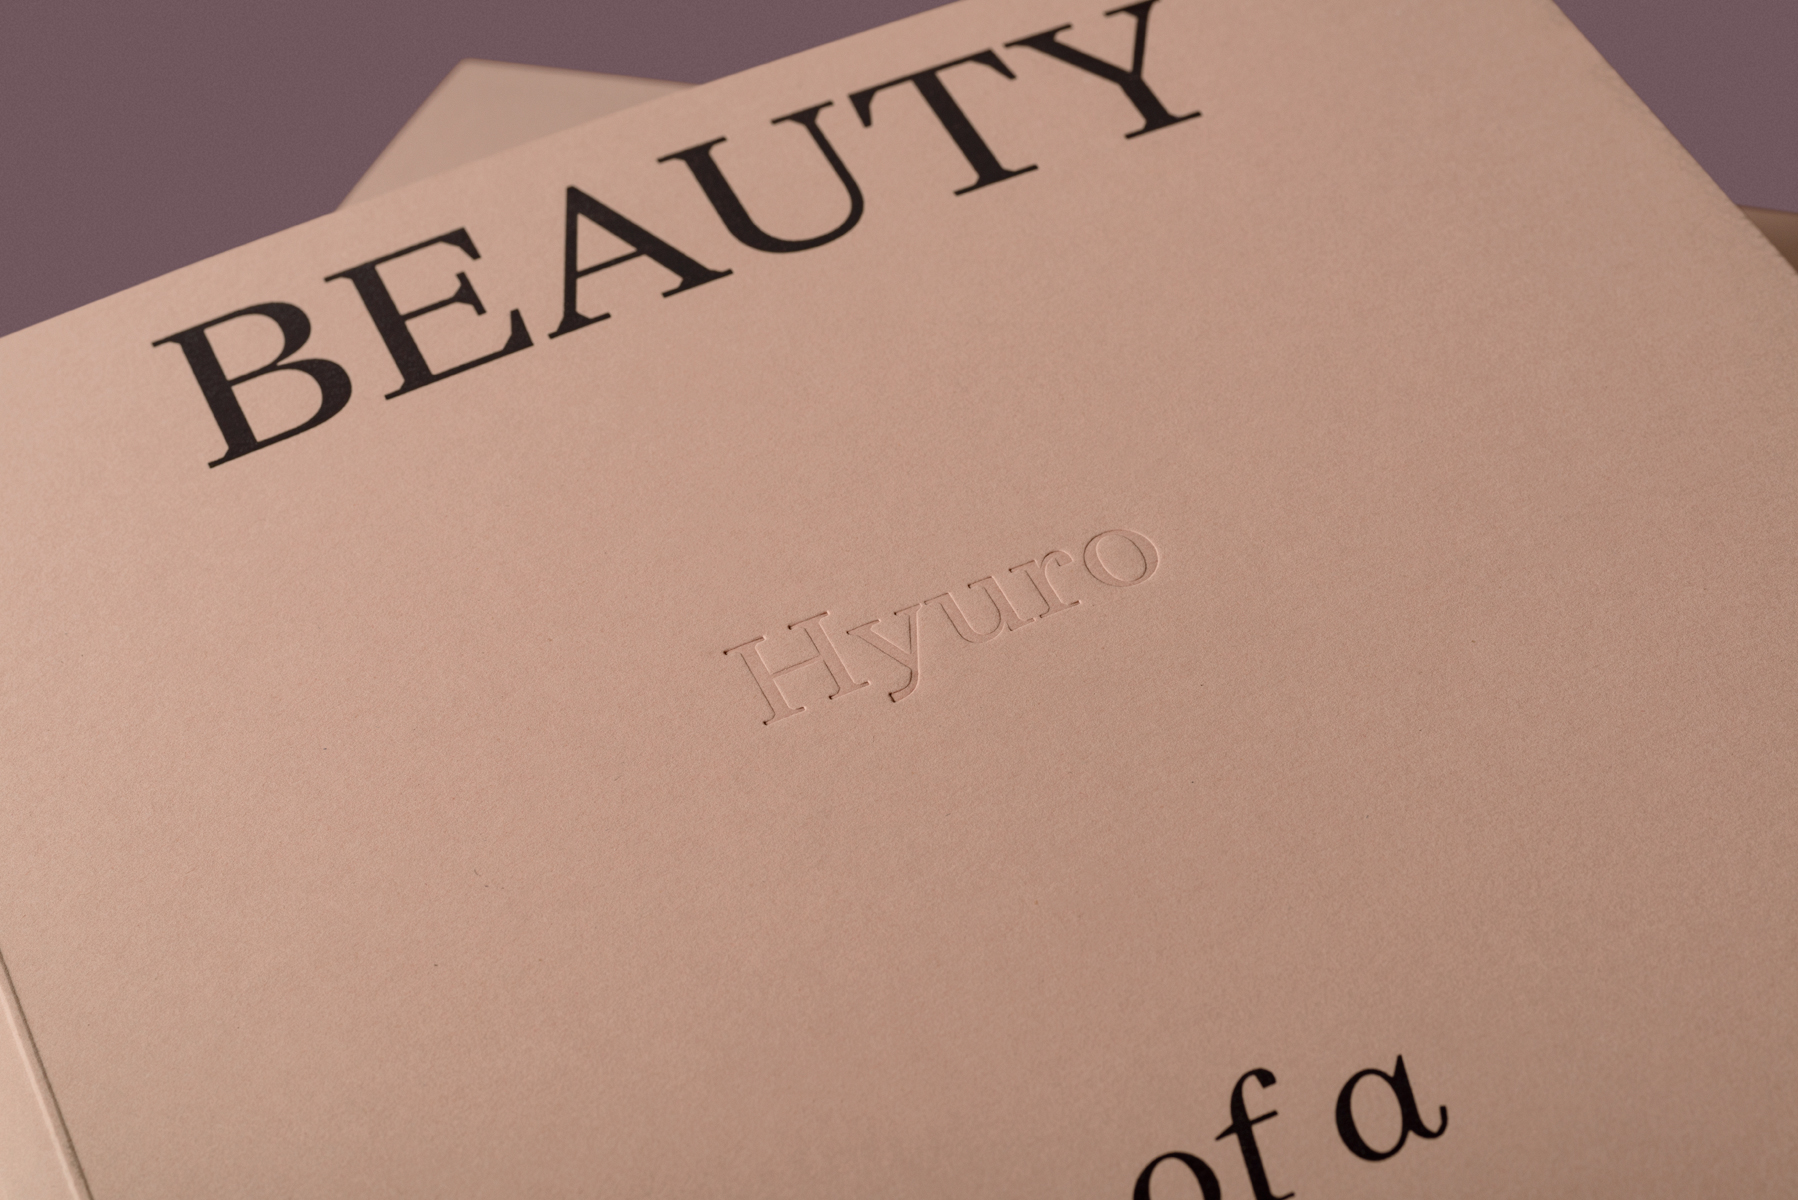 HYURO, Beauty & Tragedy